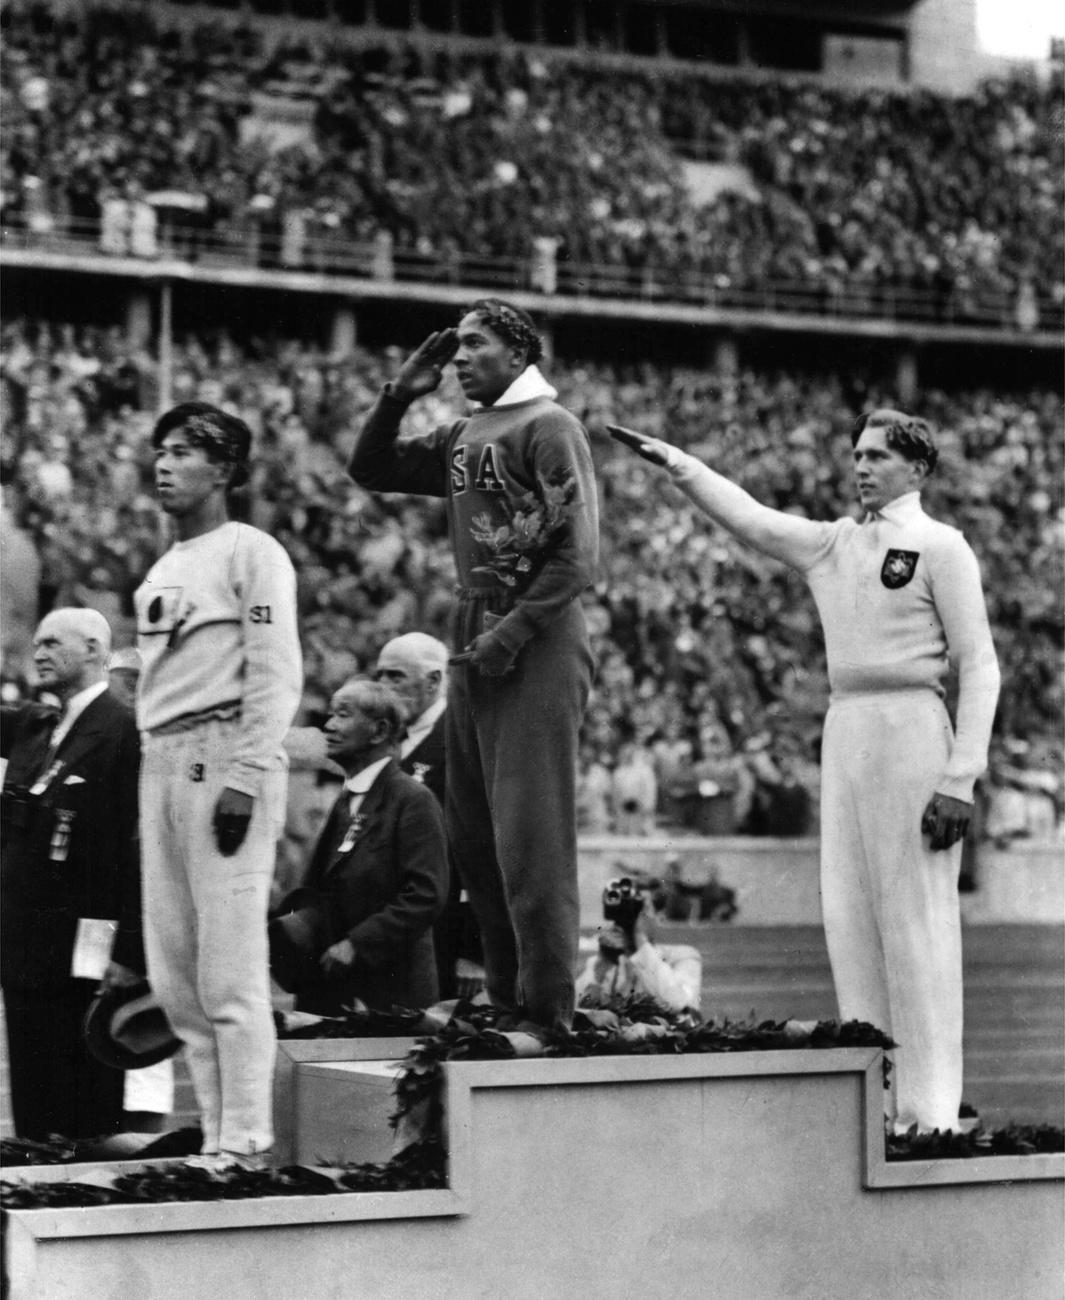 L'Américain Jesse Owens (au centre), salue lors de la présentation de sa médaille d'or pour le saut en longueur, le 11 août 1936, après avoir battu l'Allemand Lutz Long (à droite), lors des Jeux olympiques d'été de 1936 à Berlin. Le Japonais Naoto Tajima (à gauche), s'est classé troisième. Jesse Owens a triomphé dans les compétitions d'athlétisme, remportant quatre médailles d'or dans les courses de 100 et 200 mètres, le saut en longueur et le relais 400 mètres. Il est le premier athlète à remporter quatre médailles d'or aux Jeux Olympiques. [KEYSTONE - STR]